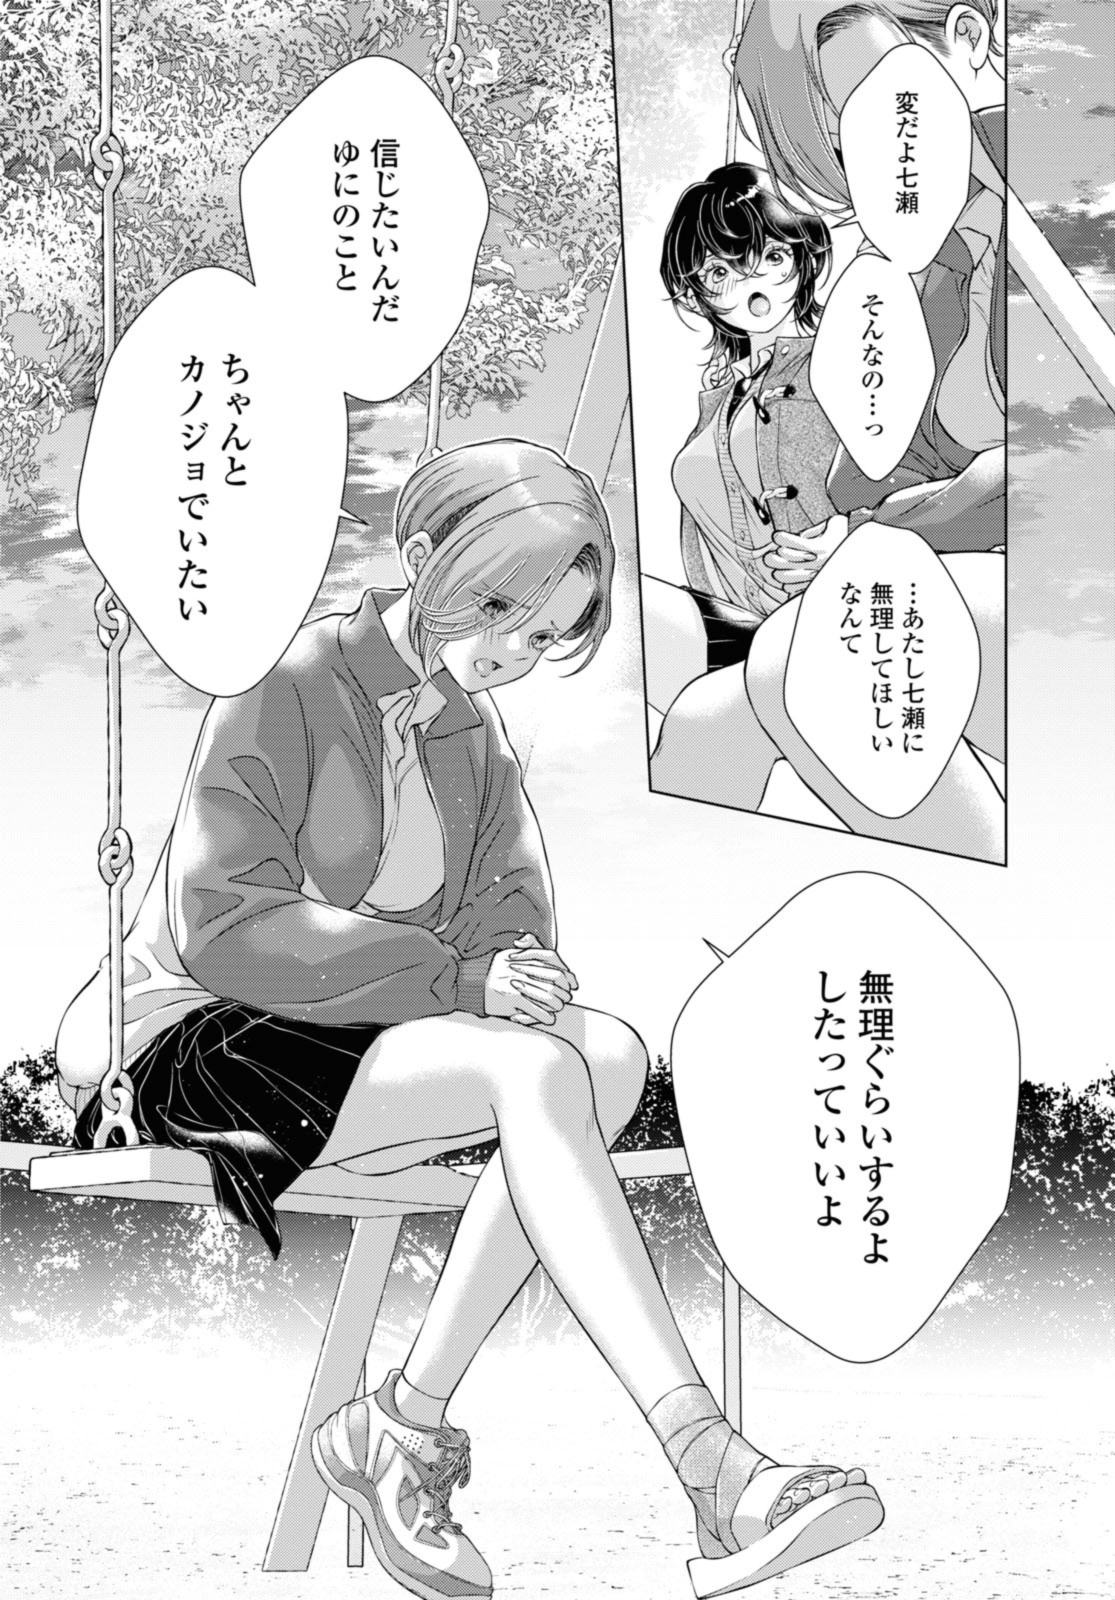 Kyou wa Kanojo ga Inai Kara - Chapter 16.2 - Page 12